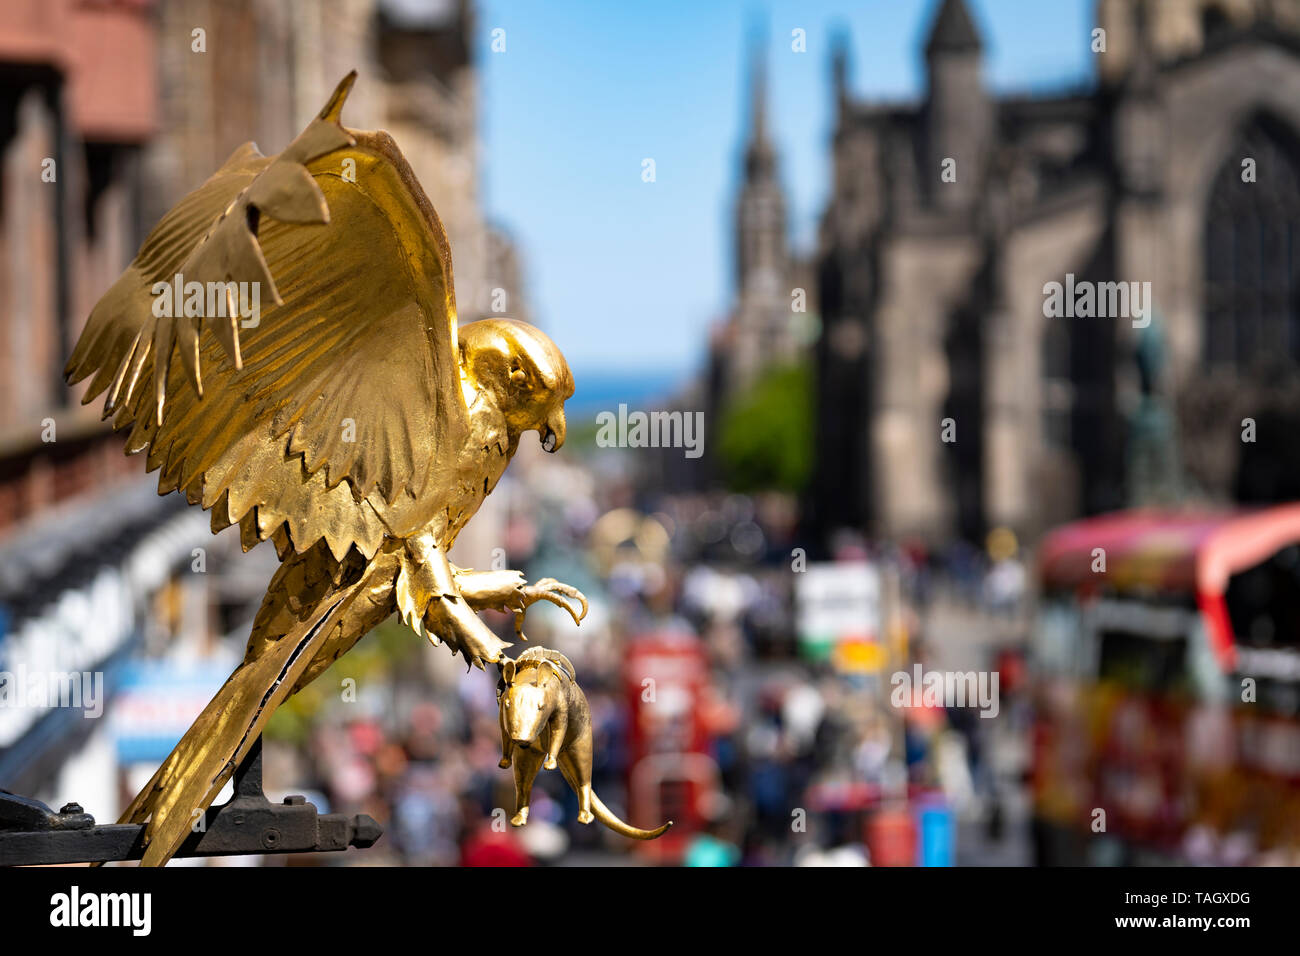 Détail de l'oiseau d'or à l'extérieur de la Terre de Gladstone bâtiment historique sur le Royal Mile de Lawnmarket à Édimbourg Vieille Ville, Ecosse, Royaume-Uni Banque D'Images